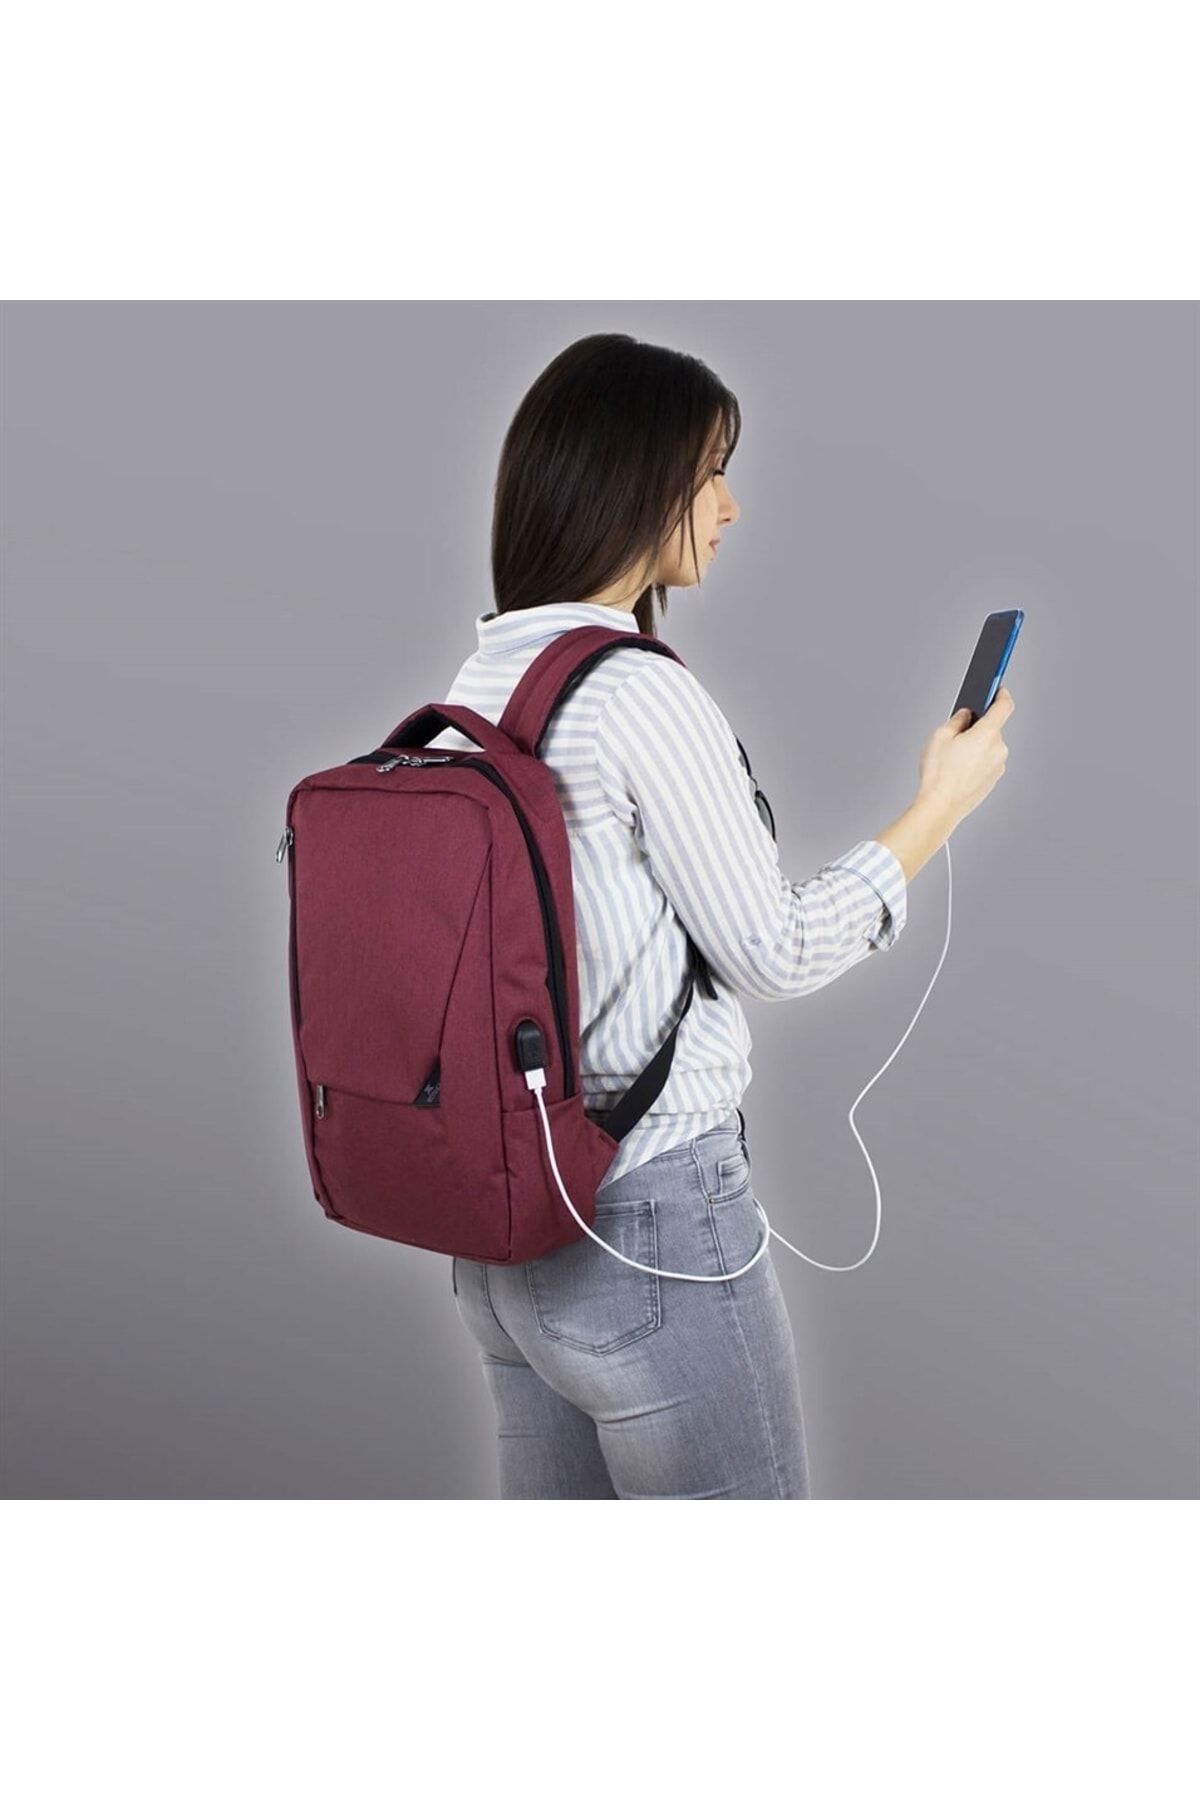 My Valice Smart Bag Active Usb Şarj Girişli Slim Notebook Laptop Sırt Çantası Bordo